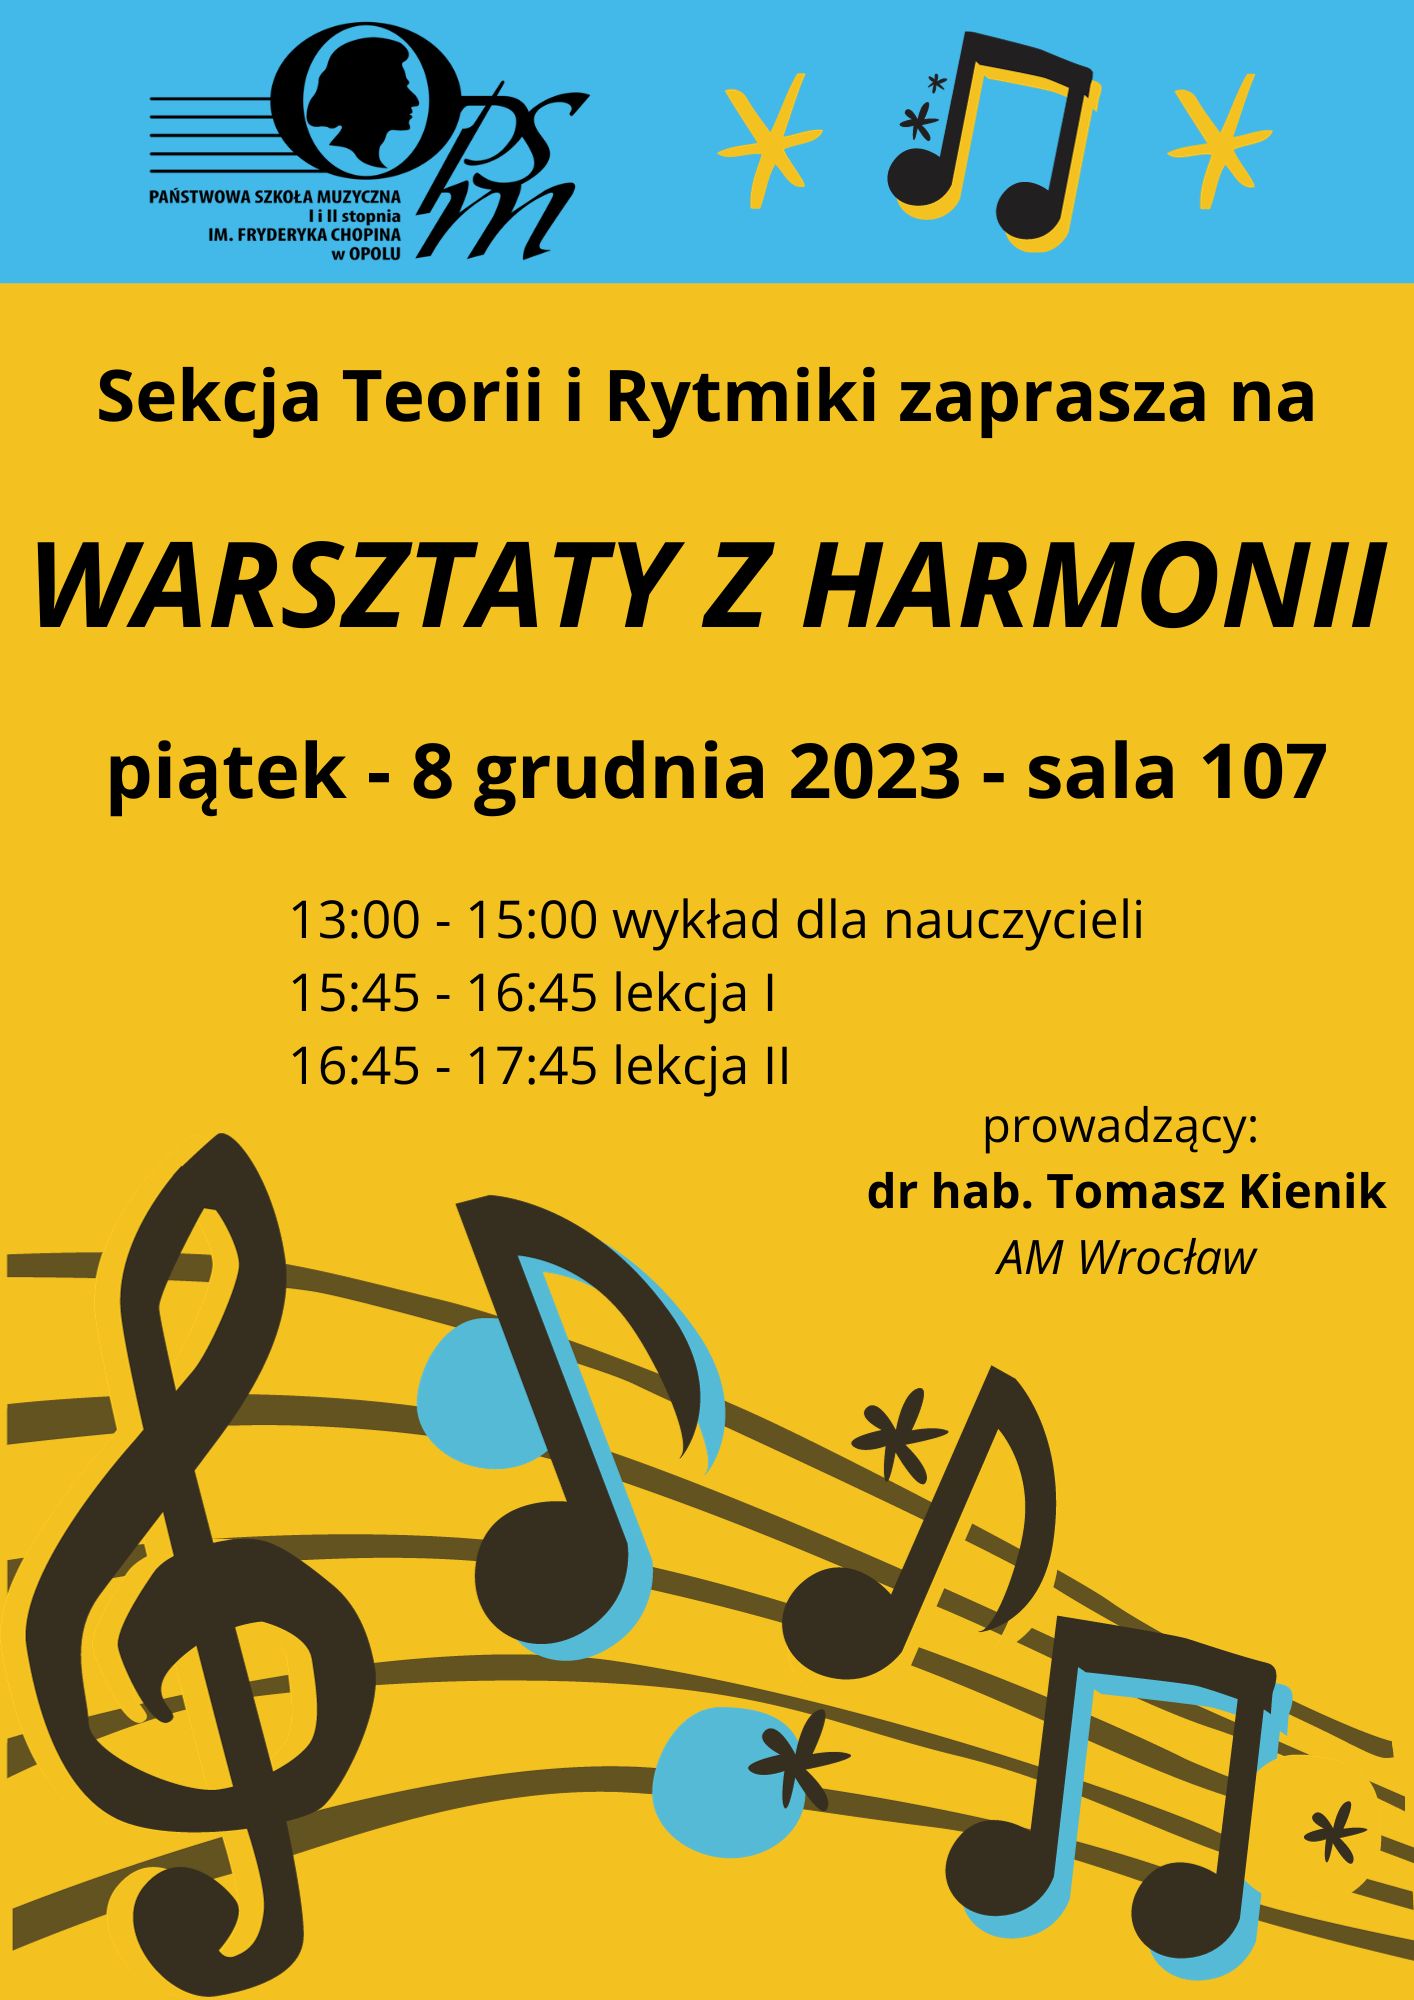 Plakat warsztatów z harmonii z dr. hab. Tomaszem Kienikiem